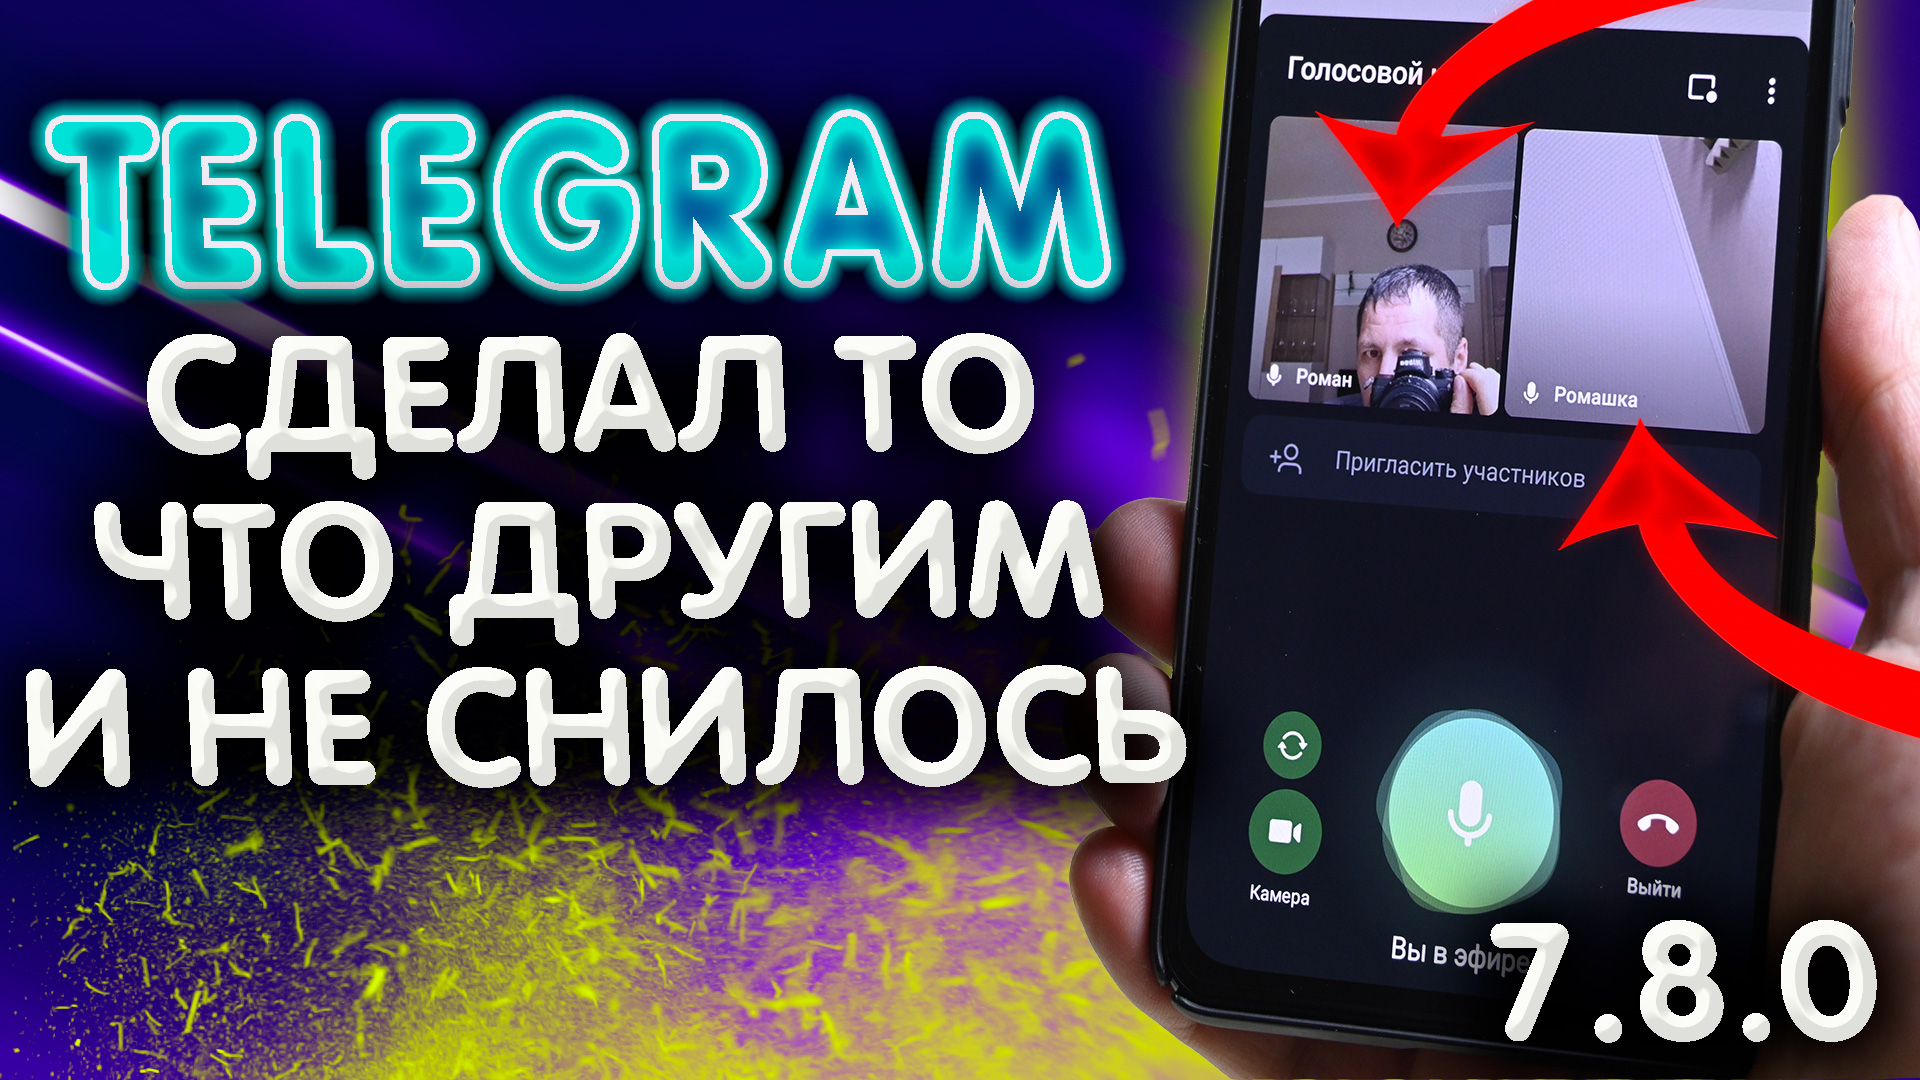 Обновление для телеграмм андроид скачать бесплатно фото 103